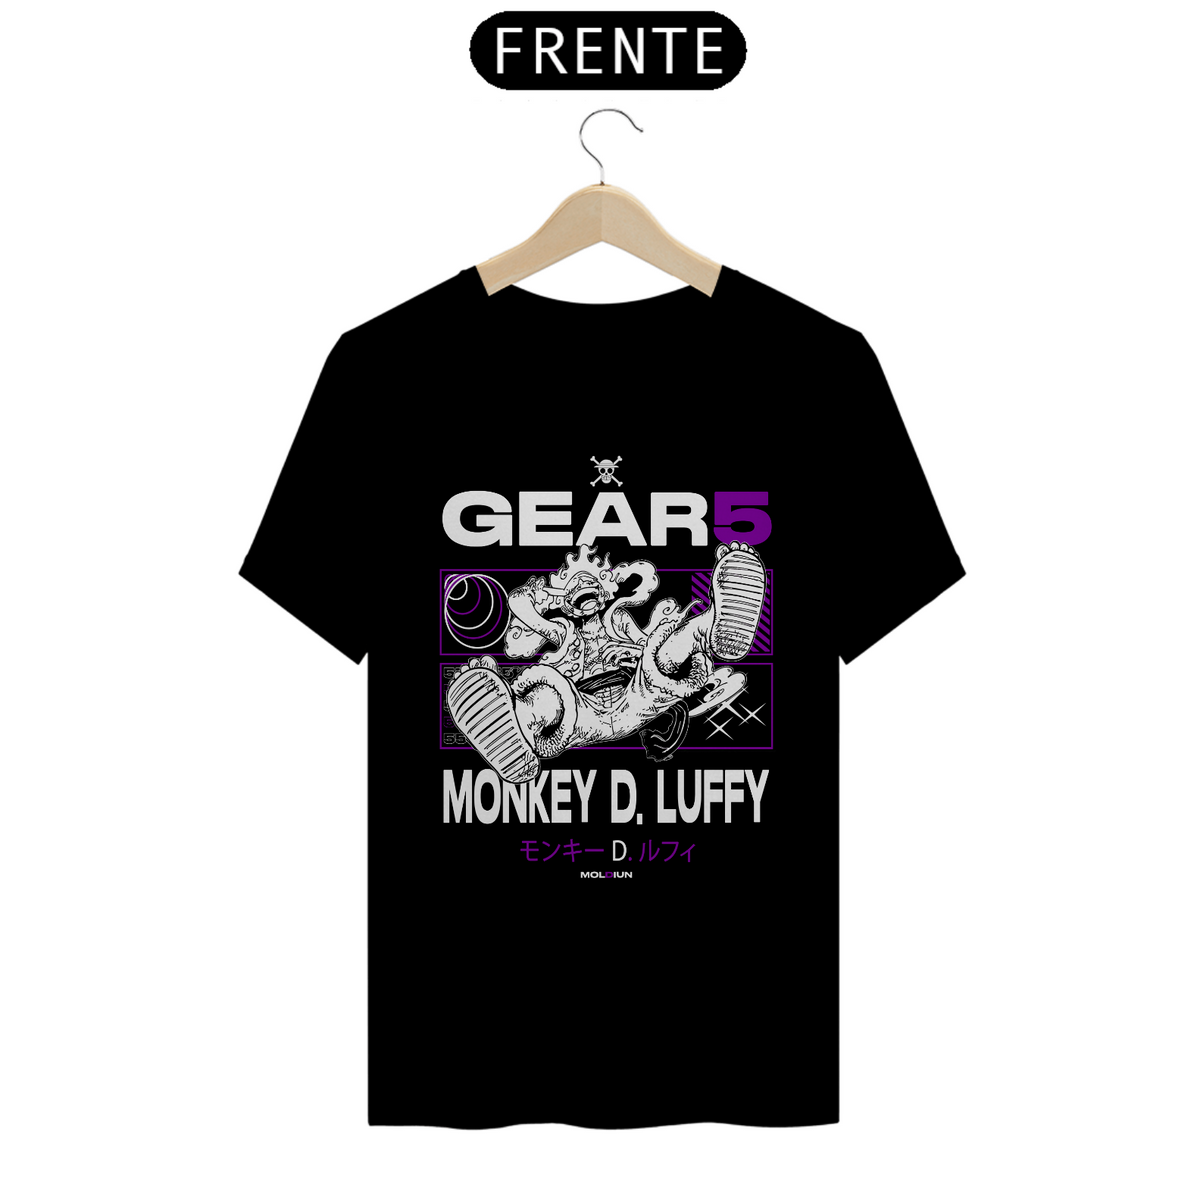 Nome do produto: Monkey D. Luffy - One piece (frente)